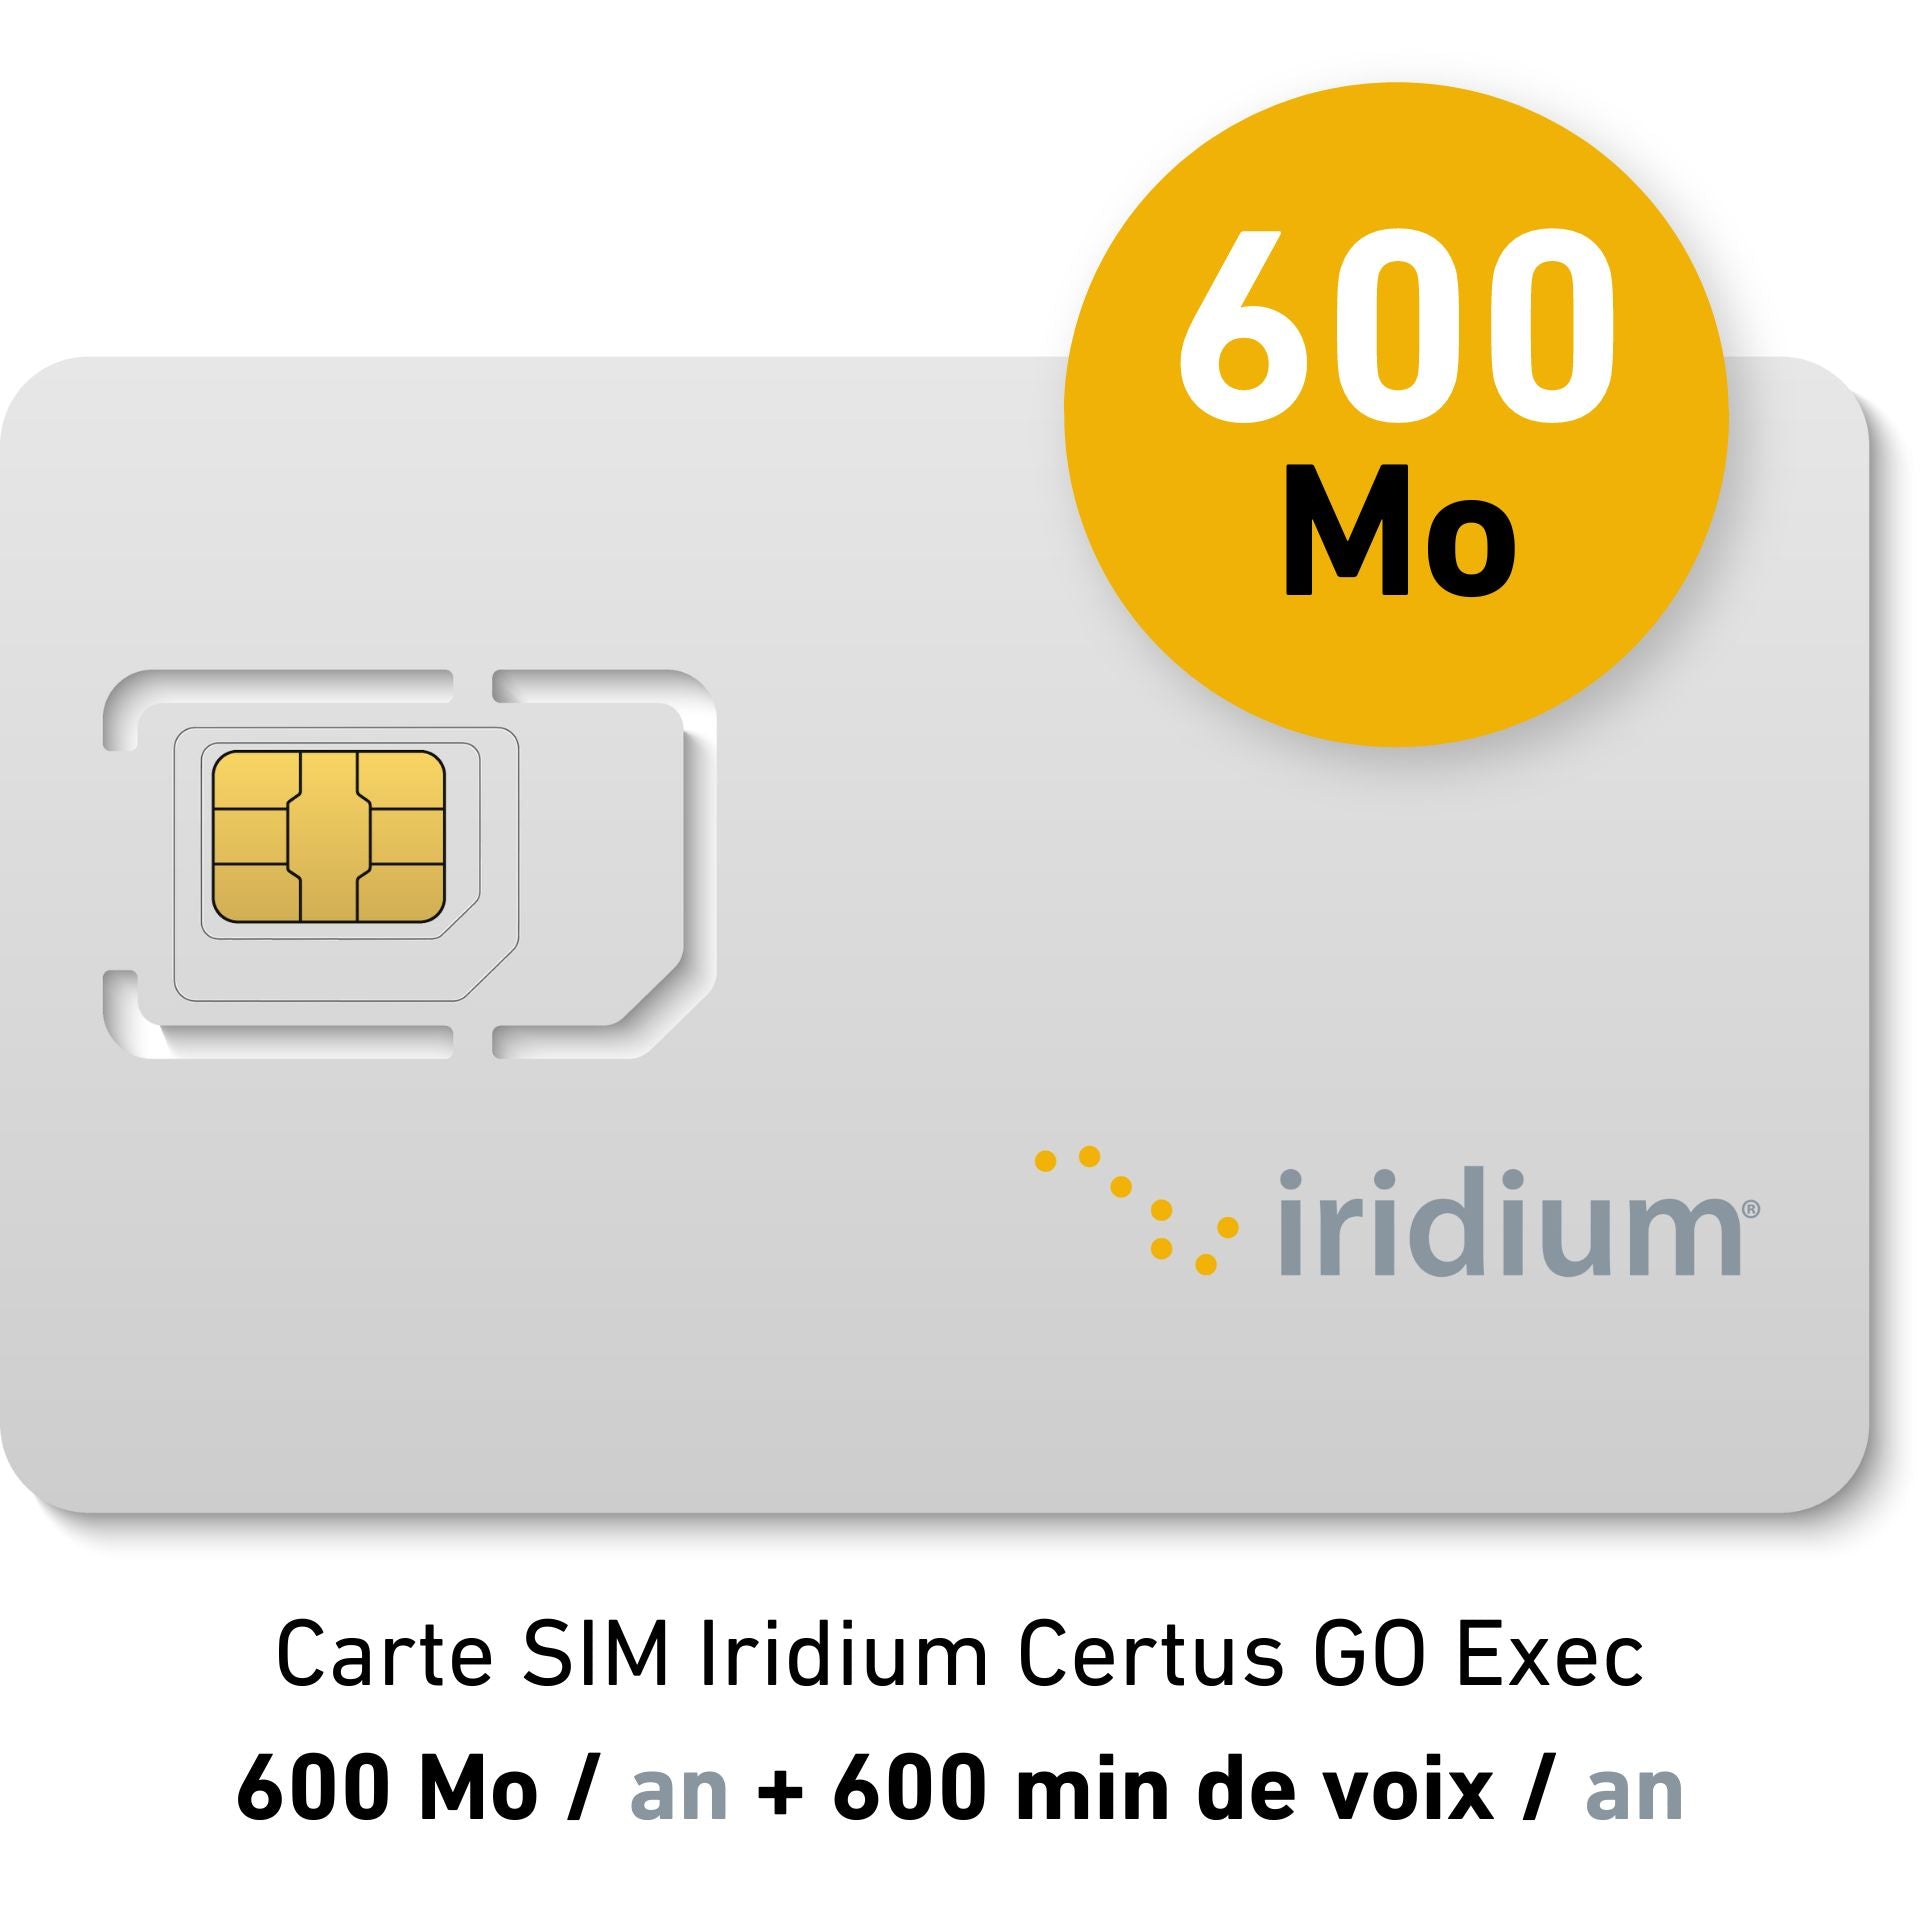 Iridium Certus GO Exec Suscripción Anual Yachting - 600MB/año - Doble Datos + 600min llamadas voz/año